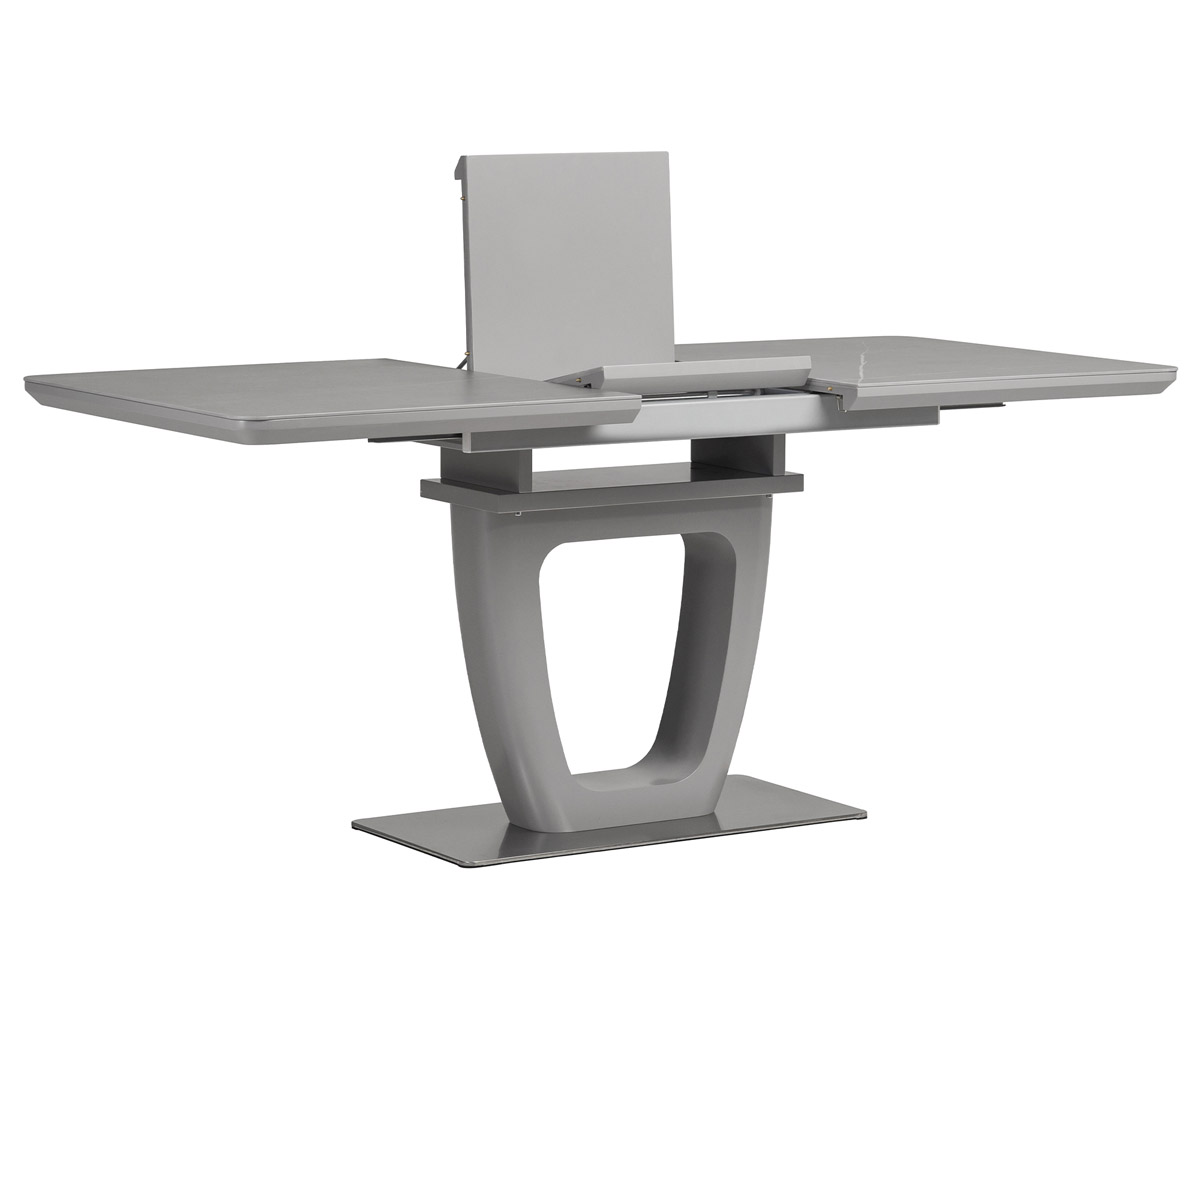 Jedálenský stôl 140+40x80 cm, keramická doska 6 mm s dekorom sivý mramor, MDF, sivý mat